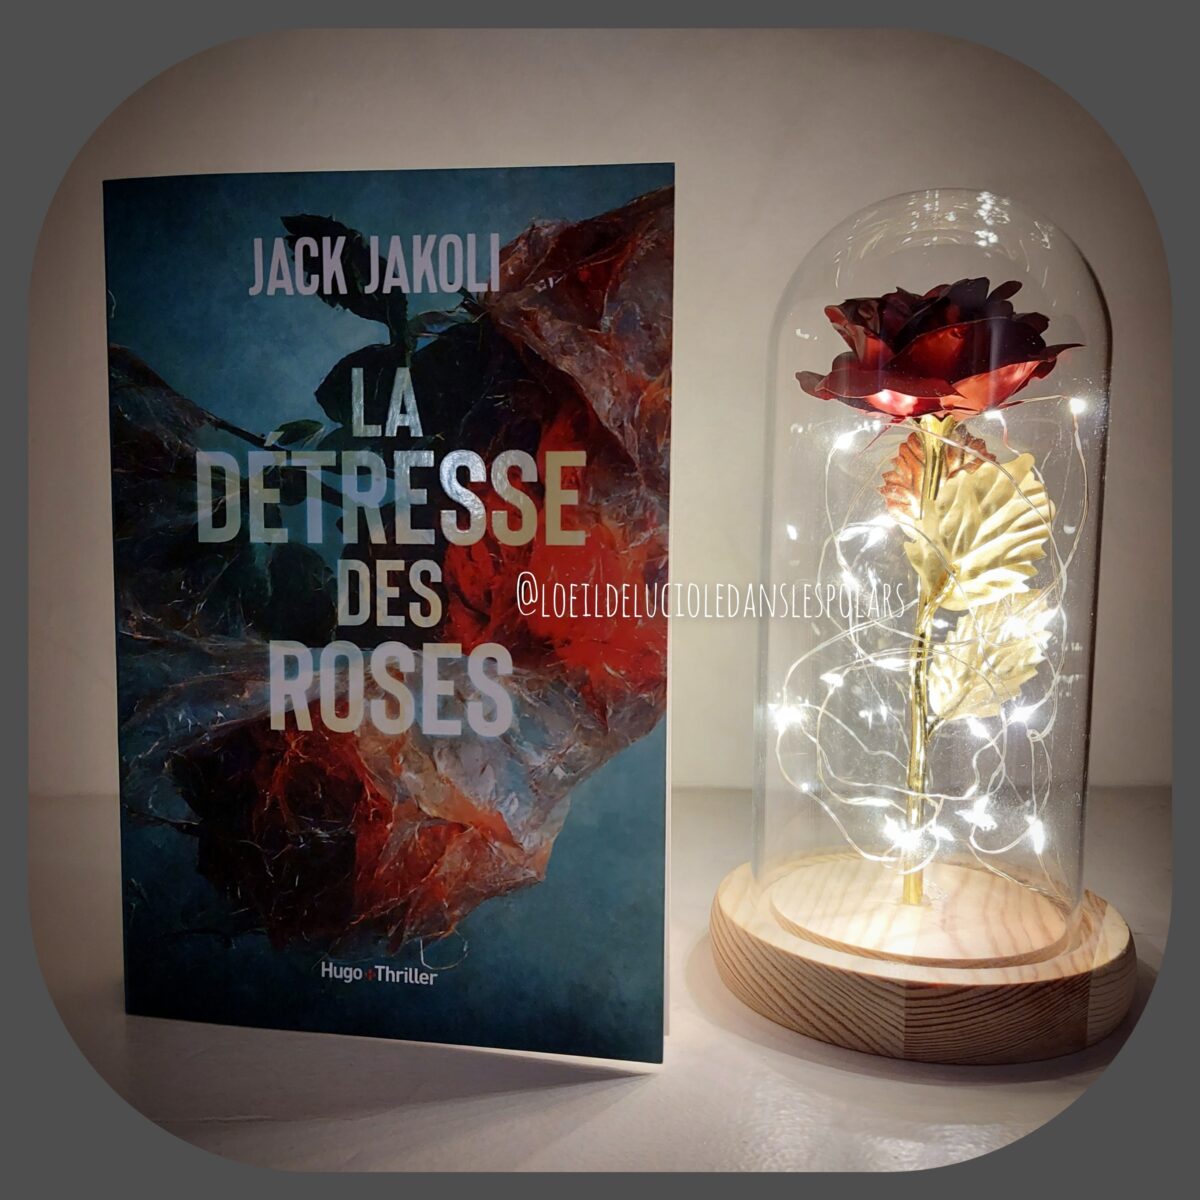 La détresse des roses de Jack Jakoli